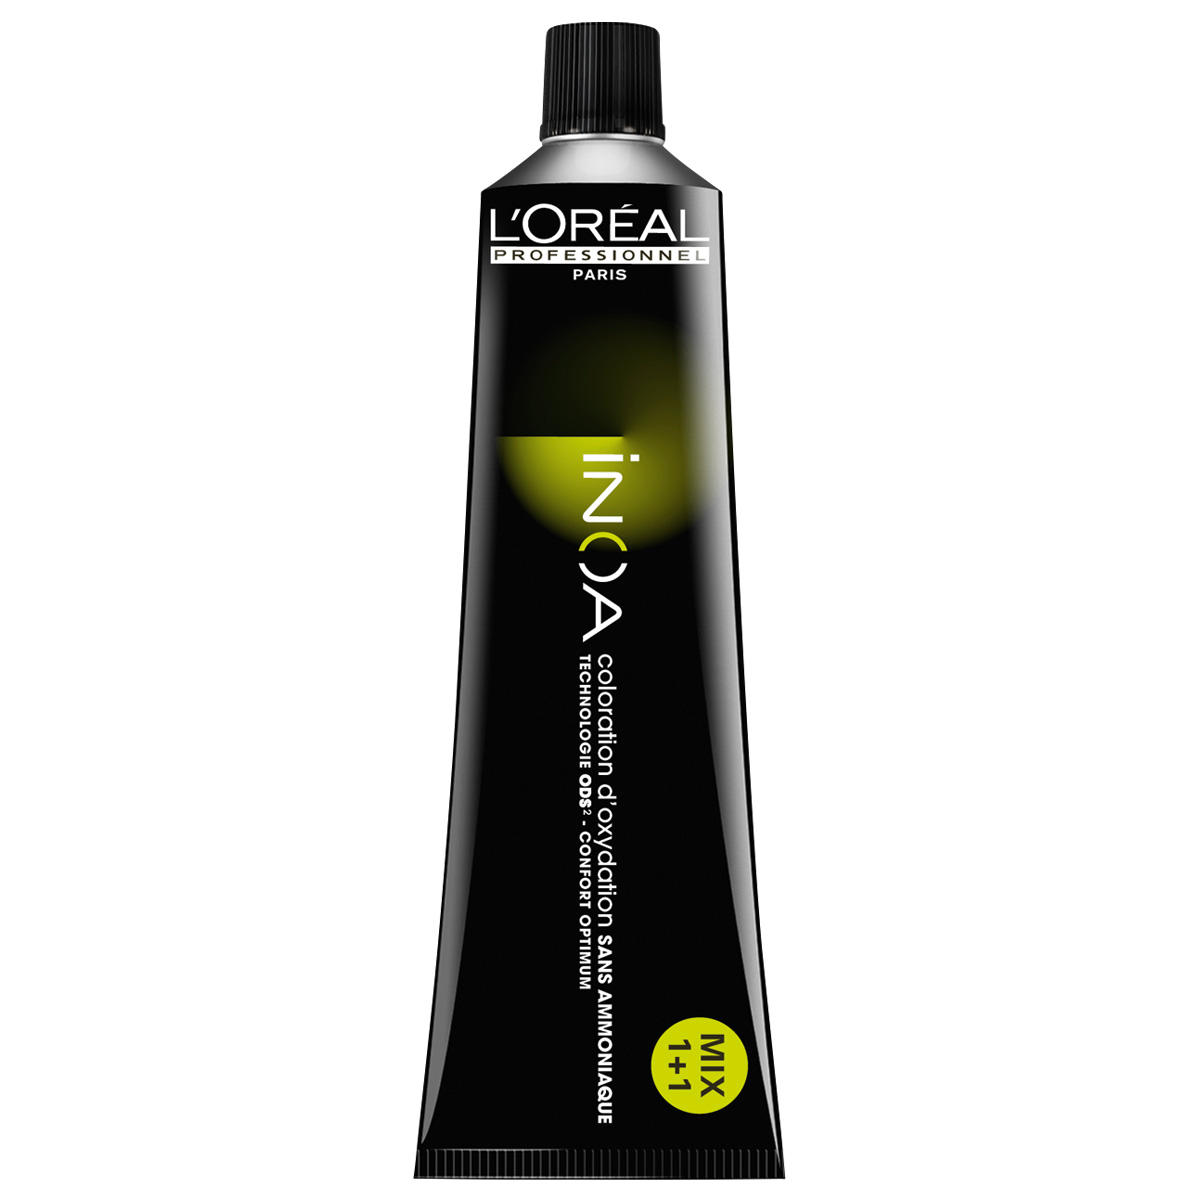 L'Oréal Professionnel Paris Coloration 6.3 Rubio Oscuro Oro, Tubo 60 ml